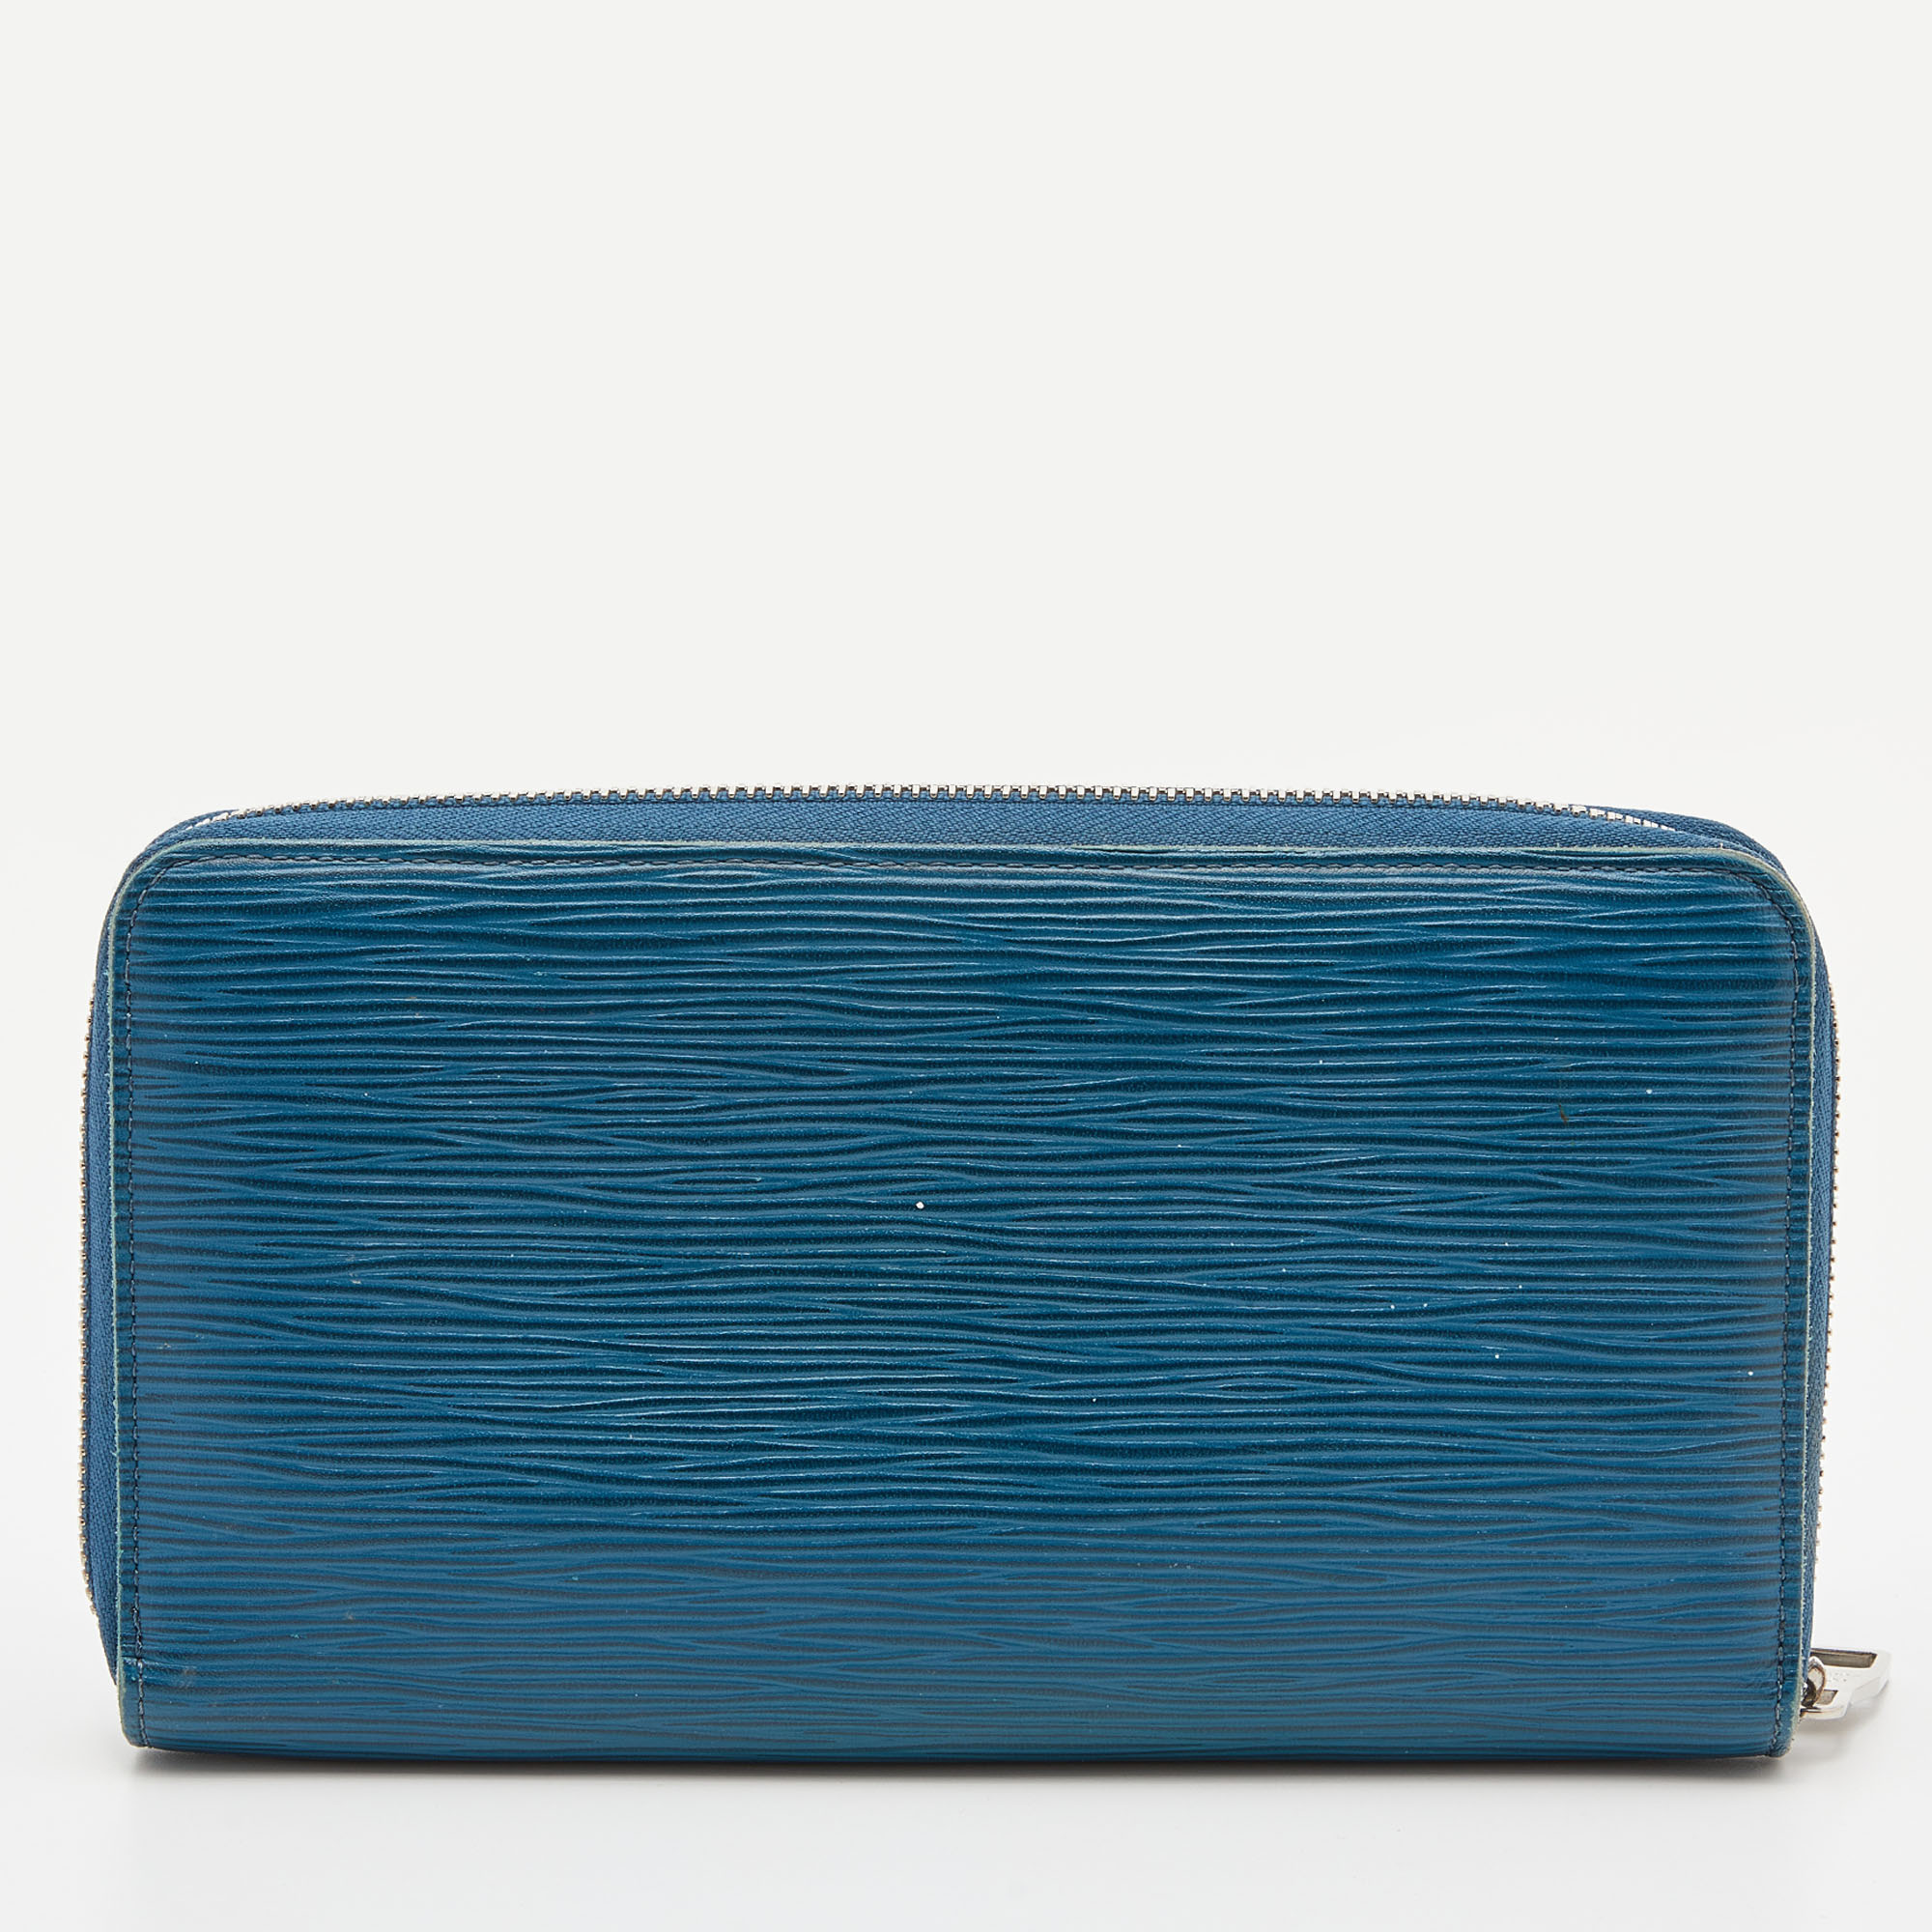 Louis Vuitton Cyan Epi Leather Zippy Wallet